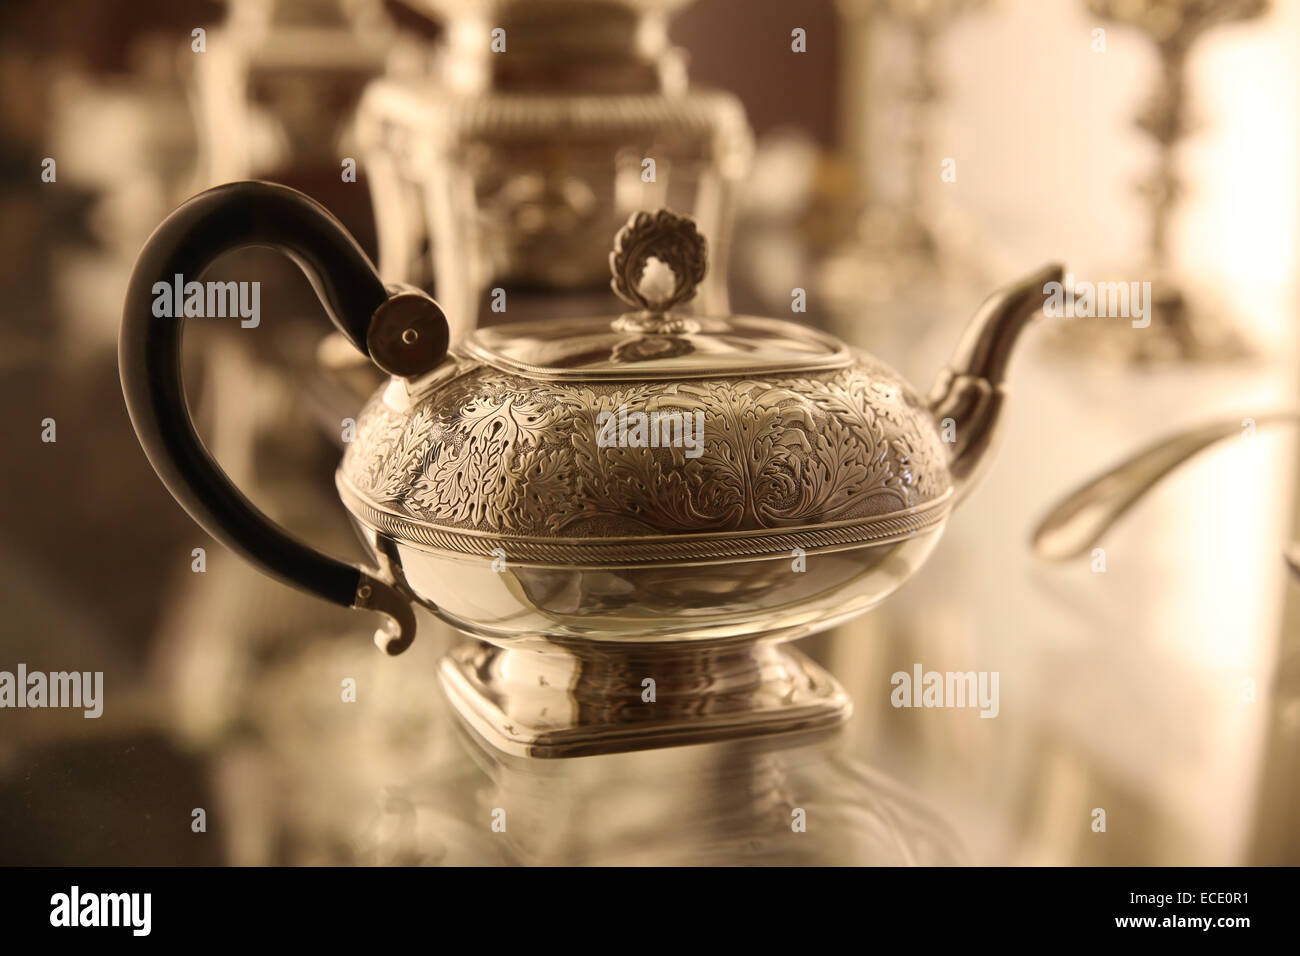 Argent chinois asiatique tea pot vintage collection d'objets Banque D'Images